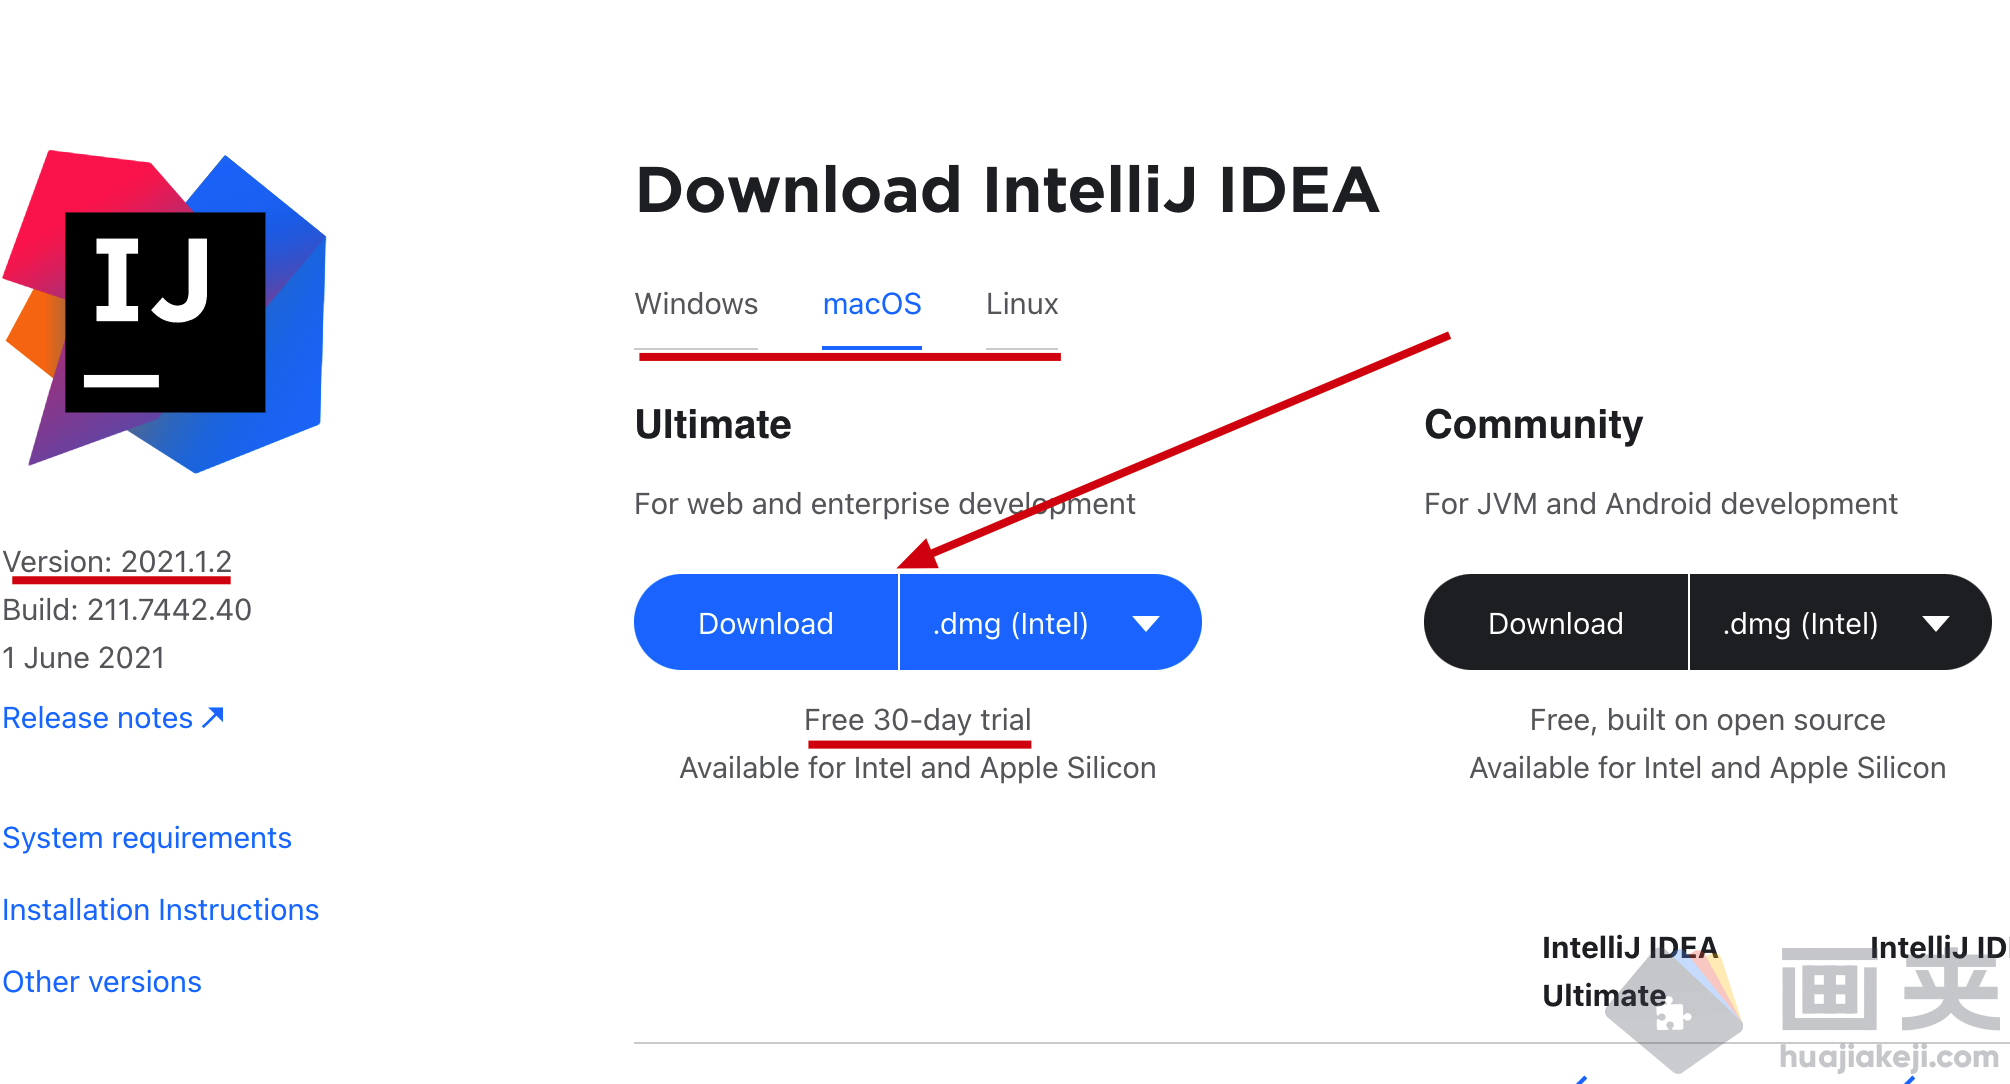  IntelliJ IDEA 2021.1.2下载